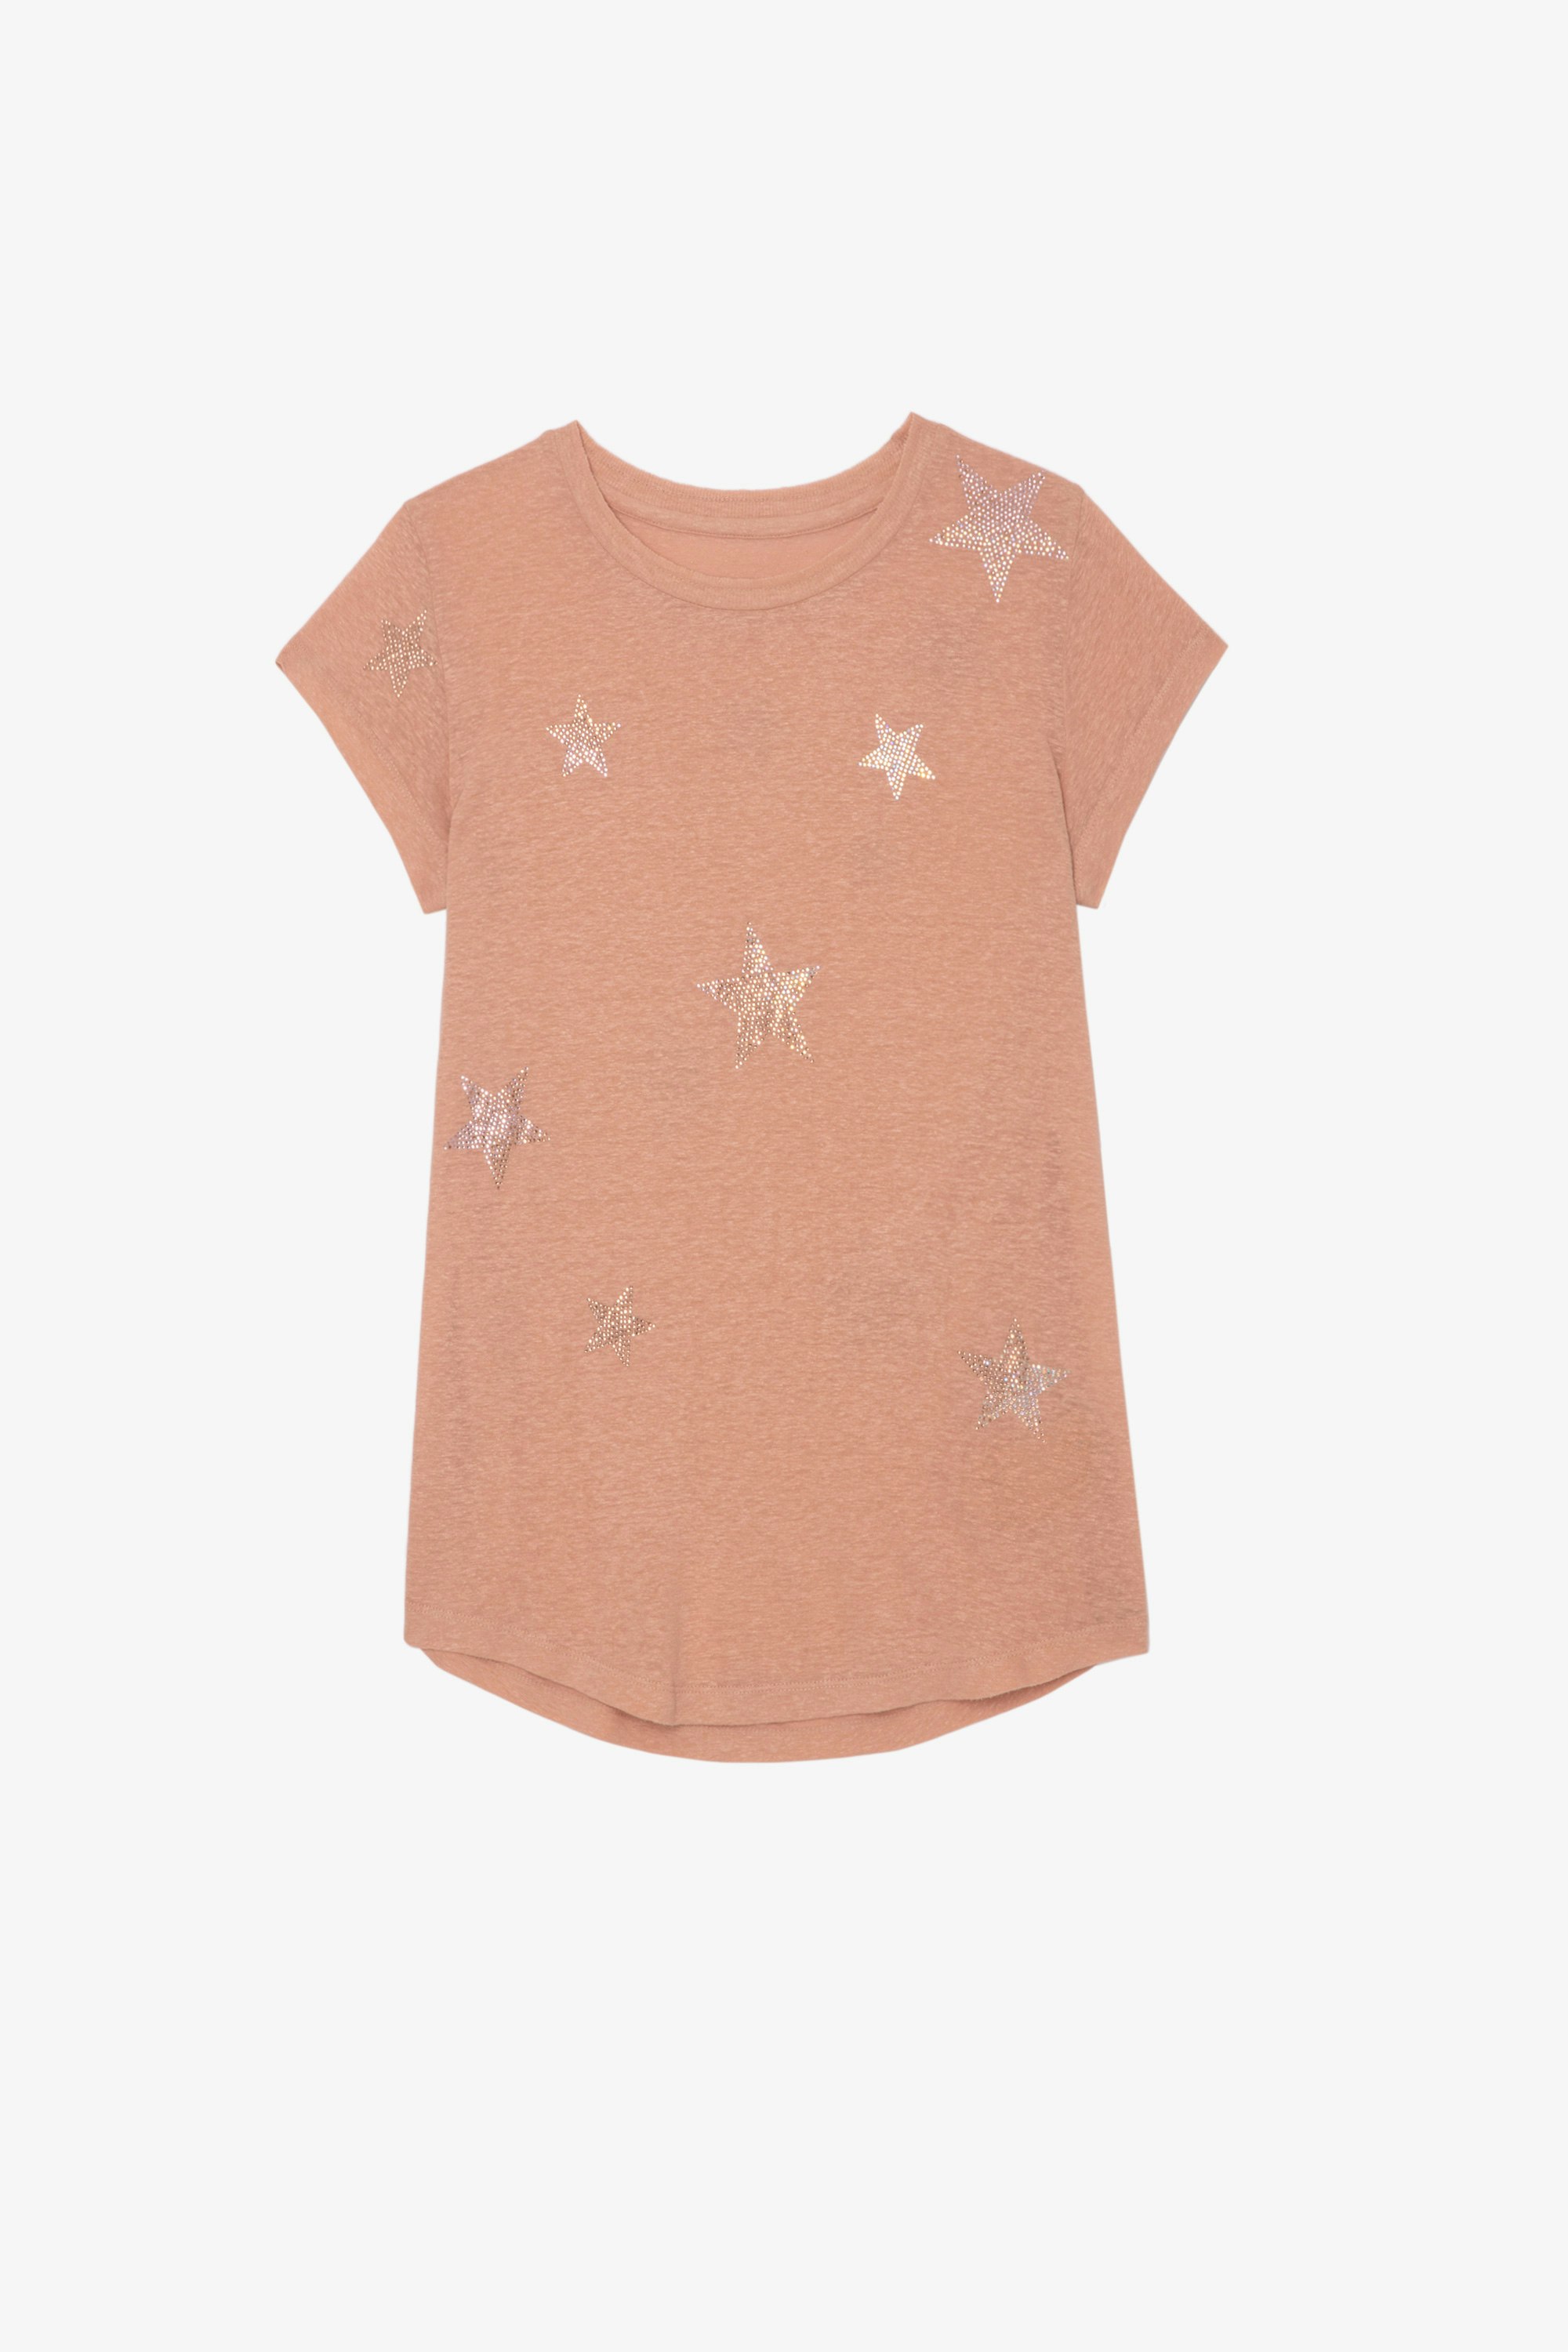 Camiseta Skinny Stars Strass Camiseta de algodón rosa de manga corta con diseño de alas ZV en la espalda para mujer